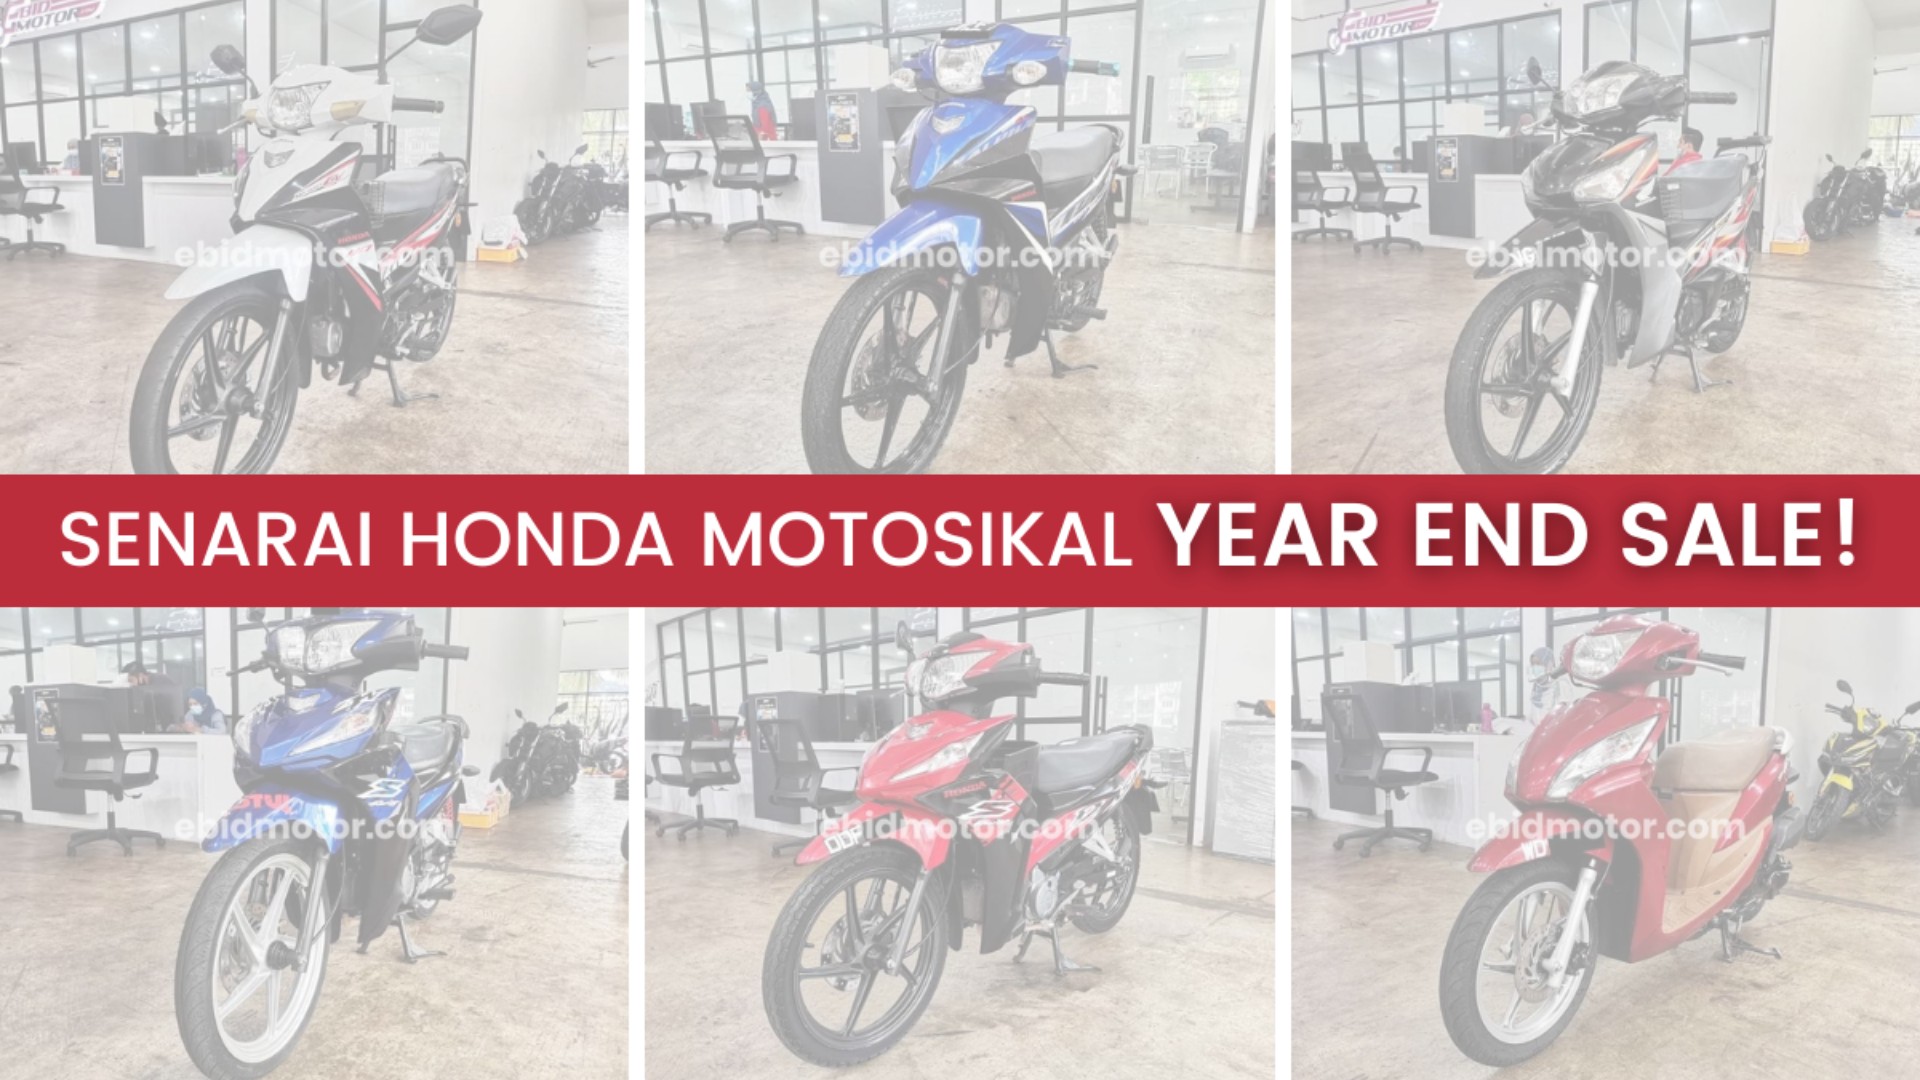 Harga Turun Lagi! Motosikal Berjenama Honda Bermula Dari RM2,800 Siap Tukar Nama!